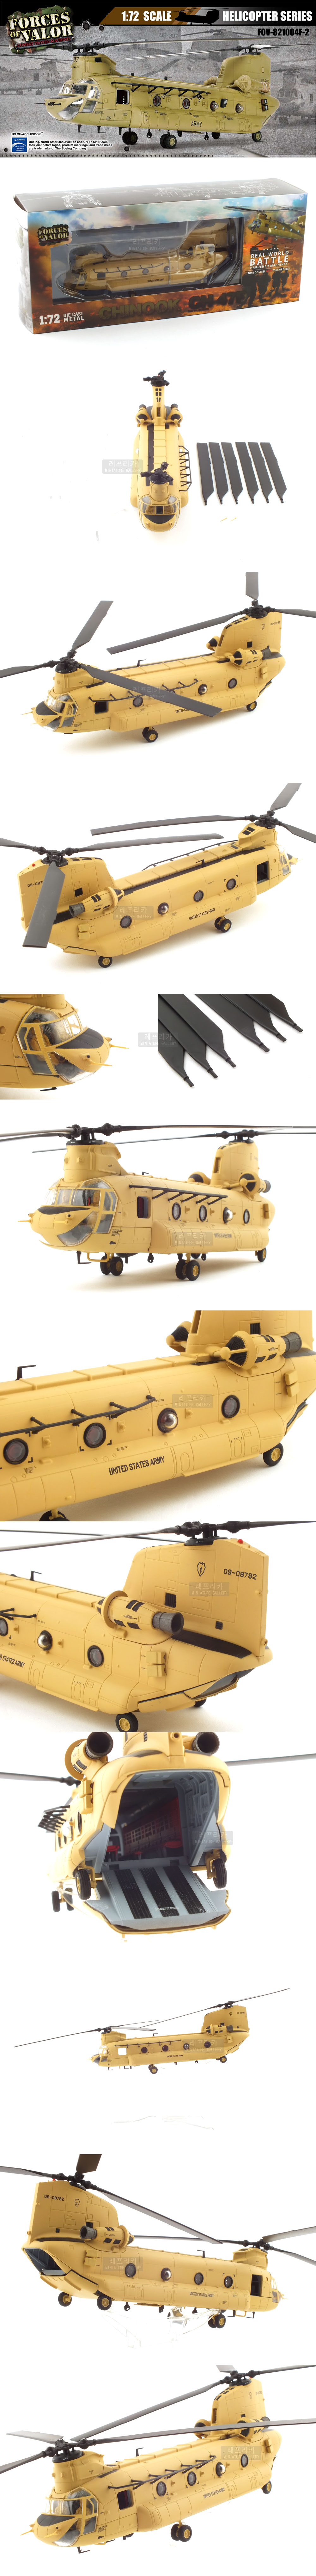 치누크 수송용 헬리콥터 CH-47F 88,000원 - 레프리카 키덜트/취미, 모형장난감, 항공기/배 모형, 비행기 모형 바보사랑 치누크 수송용 헬리콥터 CH-47F 88,000원 - 레프리카 키덜트/취미, 모형장난감, 항공기/배 모형, 비행기 모형 바보사랑